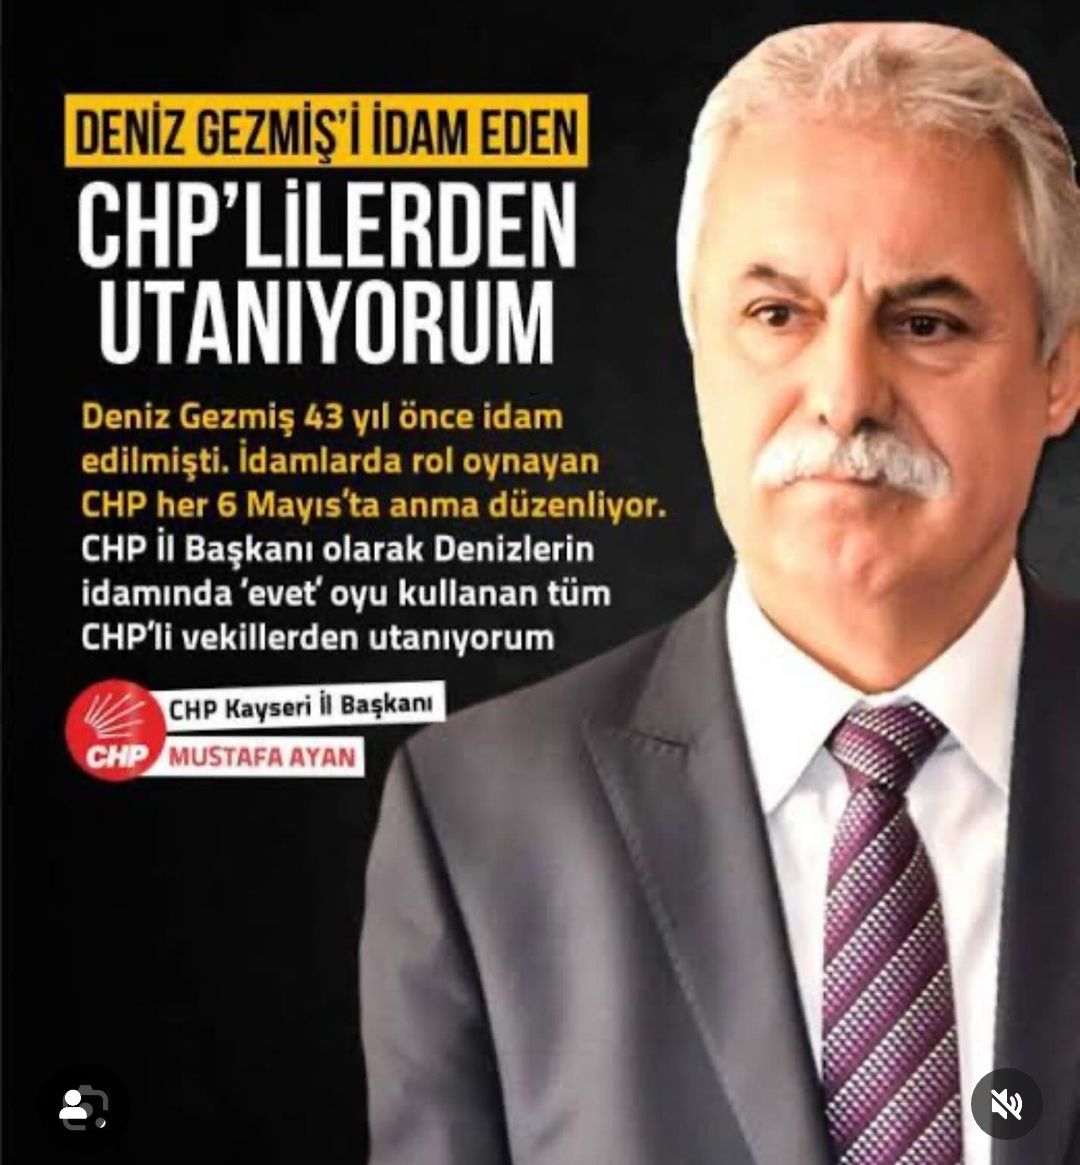 Çok şükür  CHP Kayseri İl Başkanı Mustafa Ayan,Denizleri kimlerin idam ettiğini yazmış.
CHP Milli Güvenlik Sorunudur.
Konu kapanmıştır.